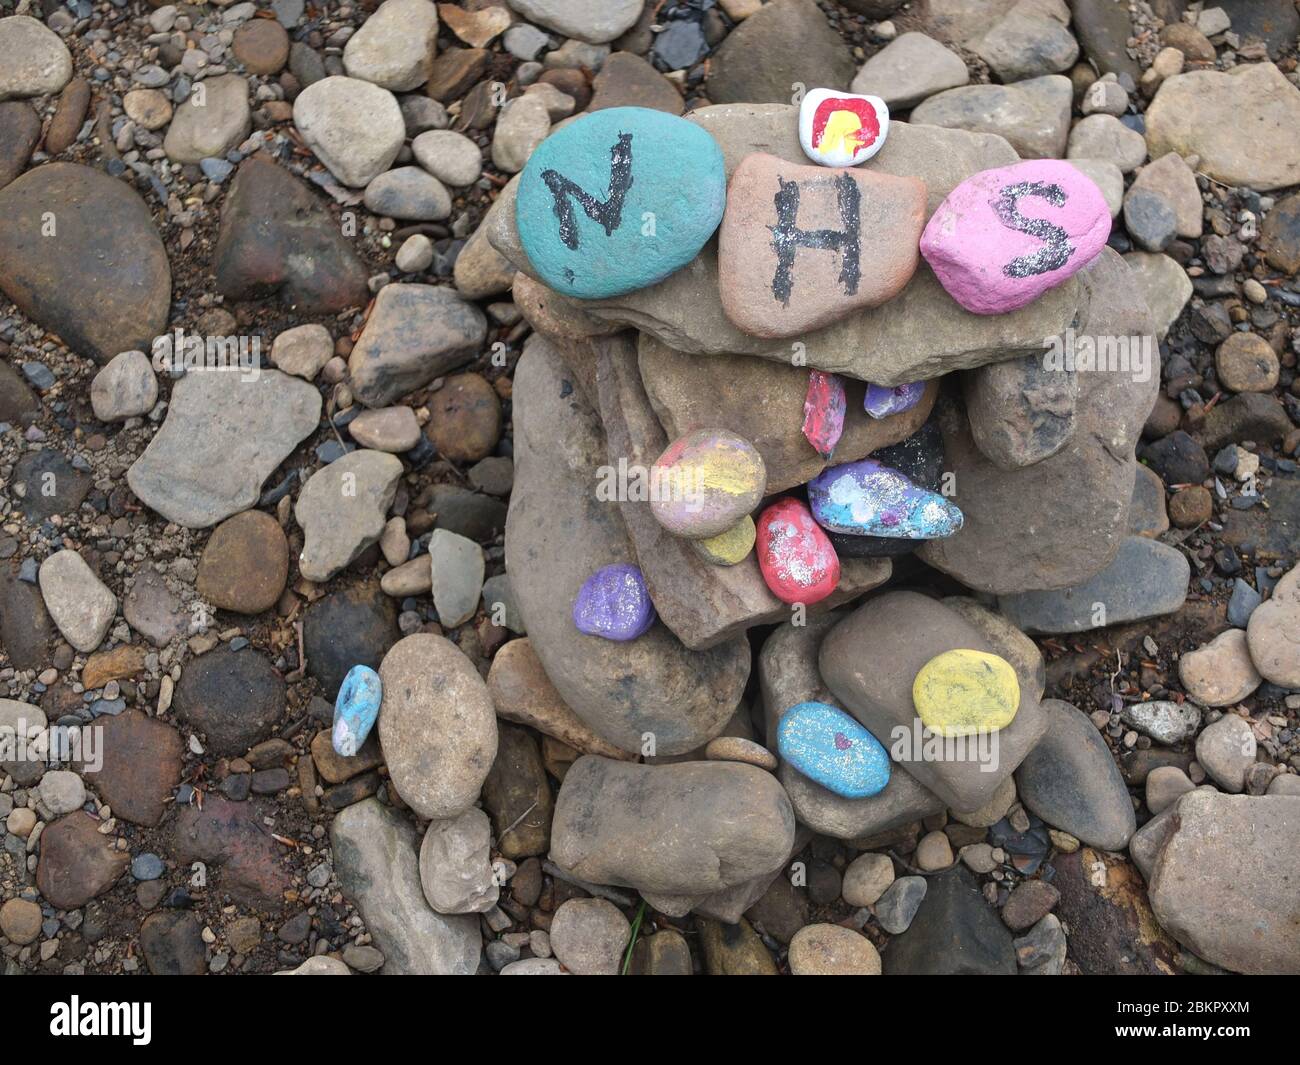 Piedras pintadas con mensajes de gratitud por NHS en el secreto 'jardín de hadas' por río en Sheffield, Reino Unido, que ha surgido durante el cierre del Coronavirus Foto de stock